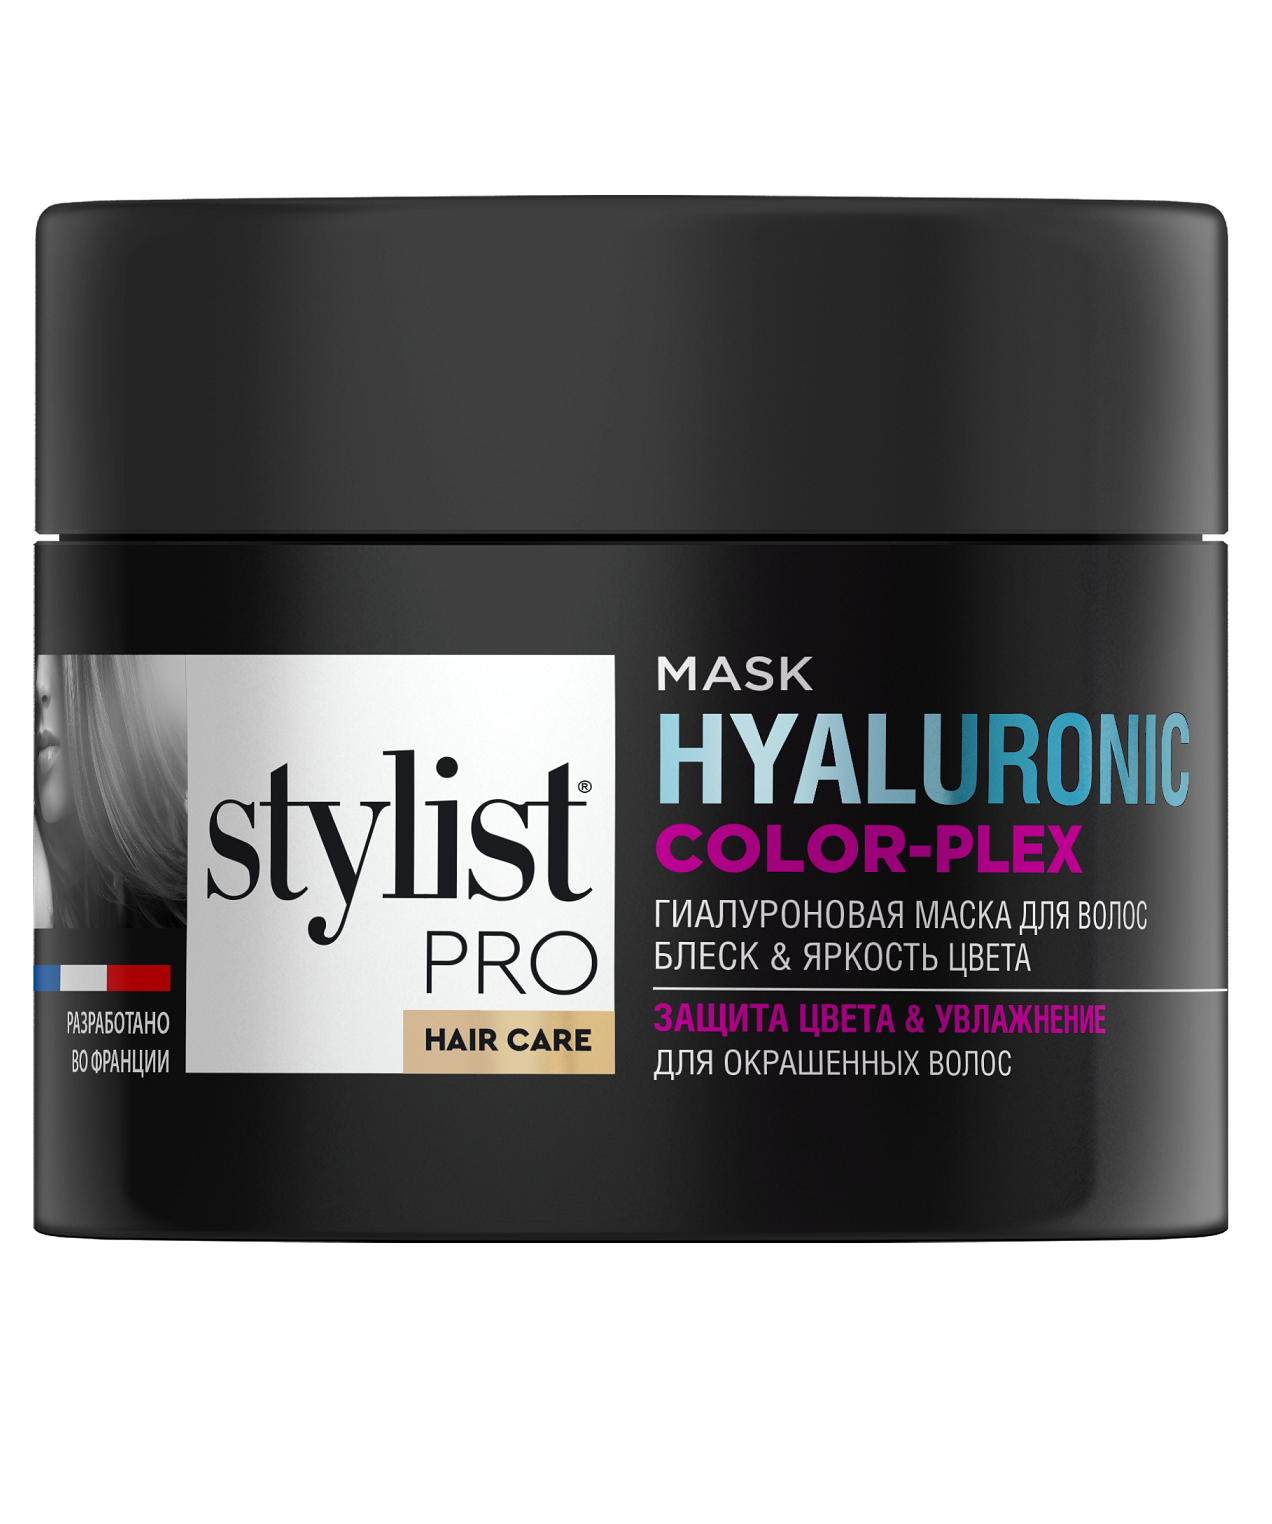 Маска для волос STYLIST PRO hair care Гиалуроновая блеск и яркость цвета 220мл р - в интернет-магазине tut-beauty.by